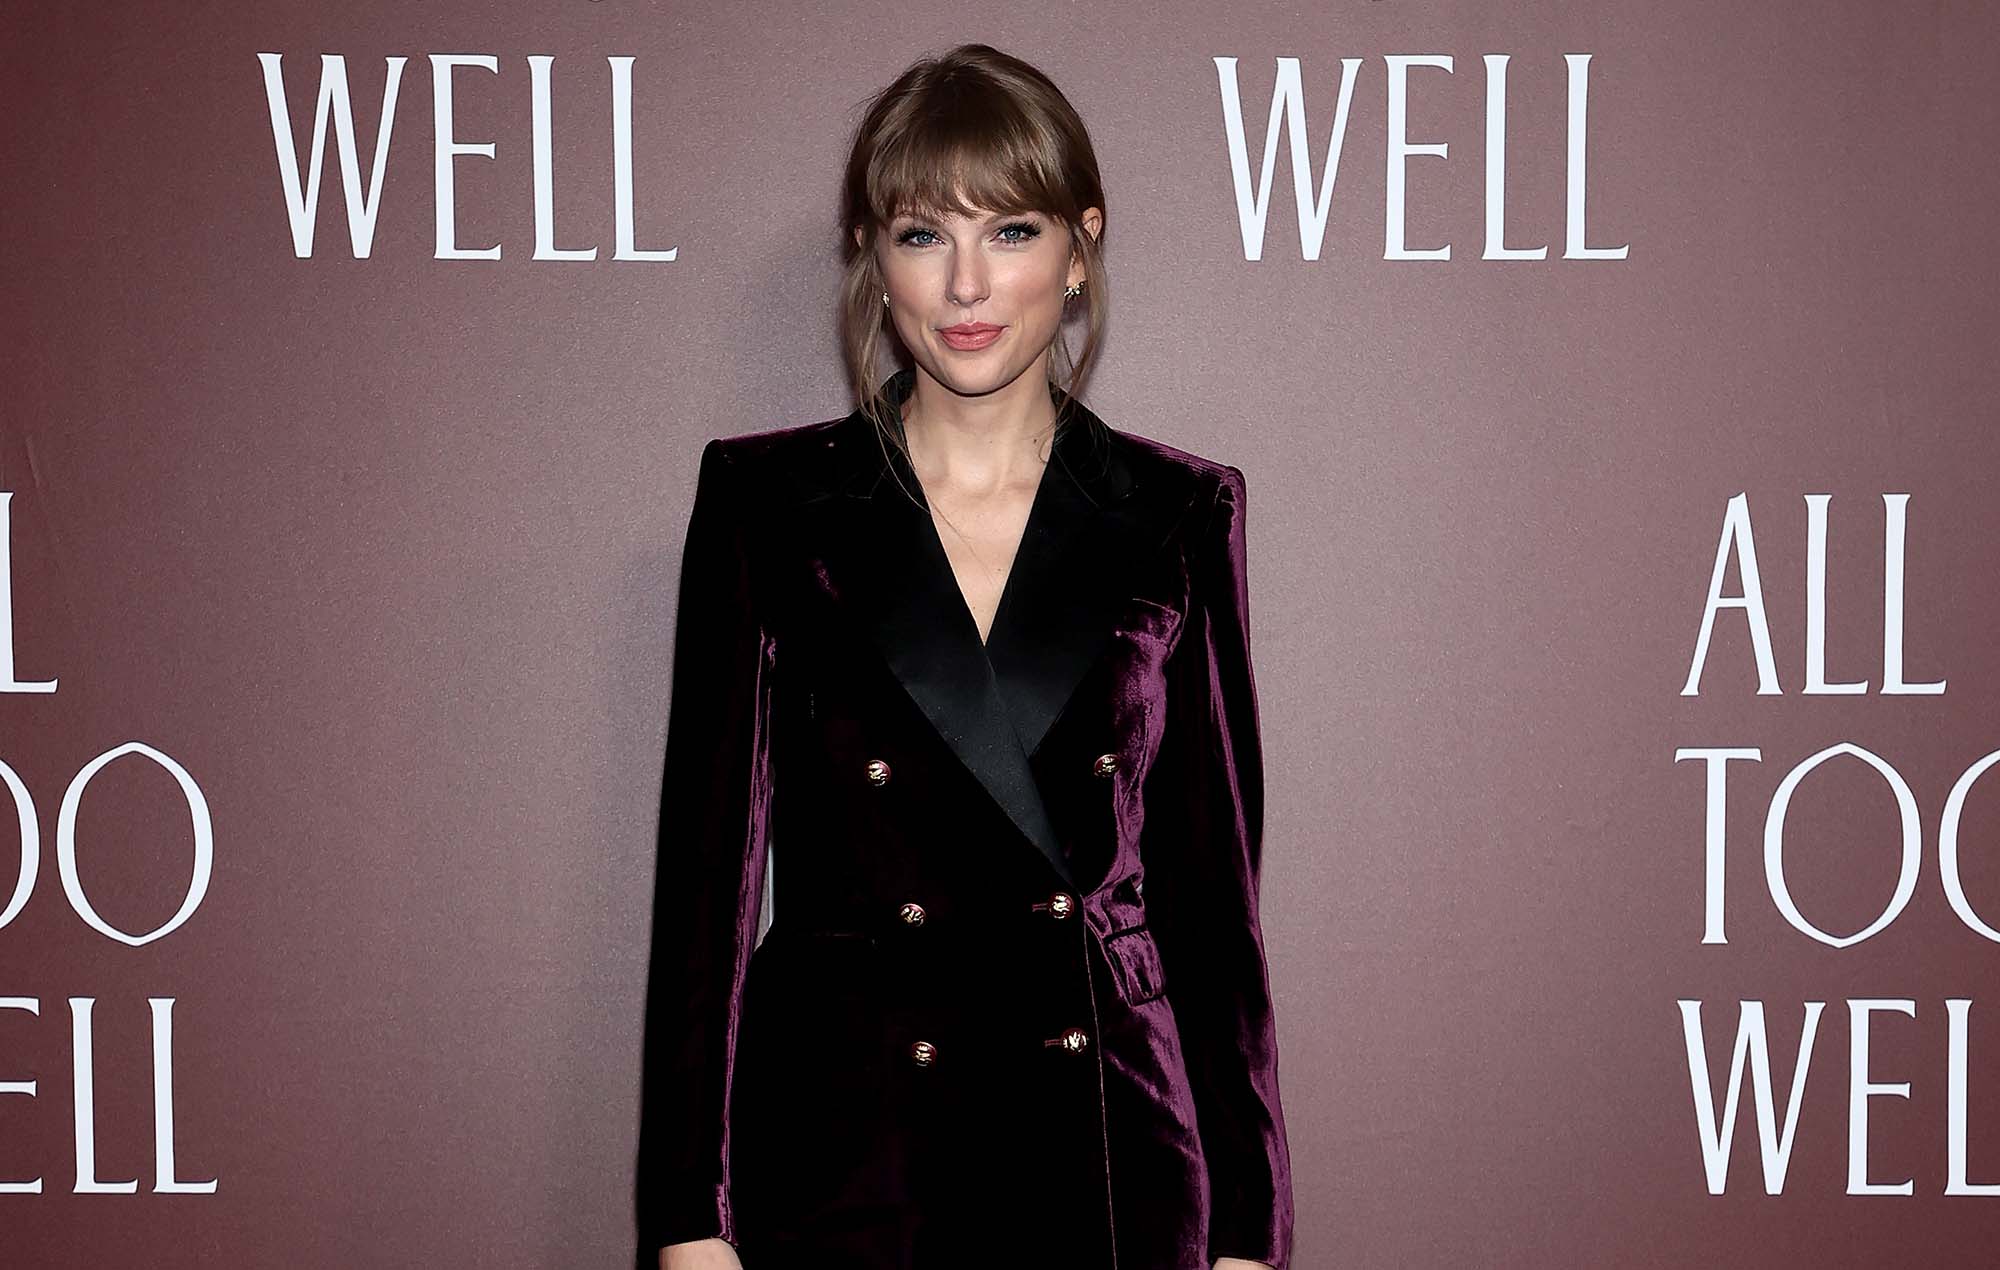 Taylor Swift sobre hacer cine después de 'All Too Well': "Sería fantástico escribir y dirigir un largometraje"